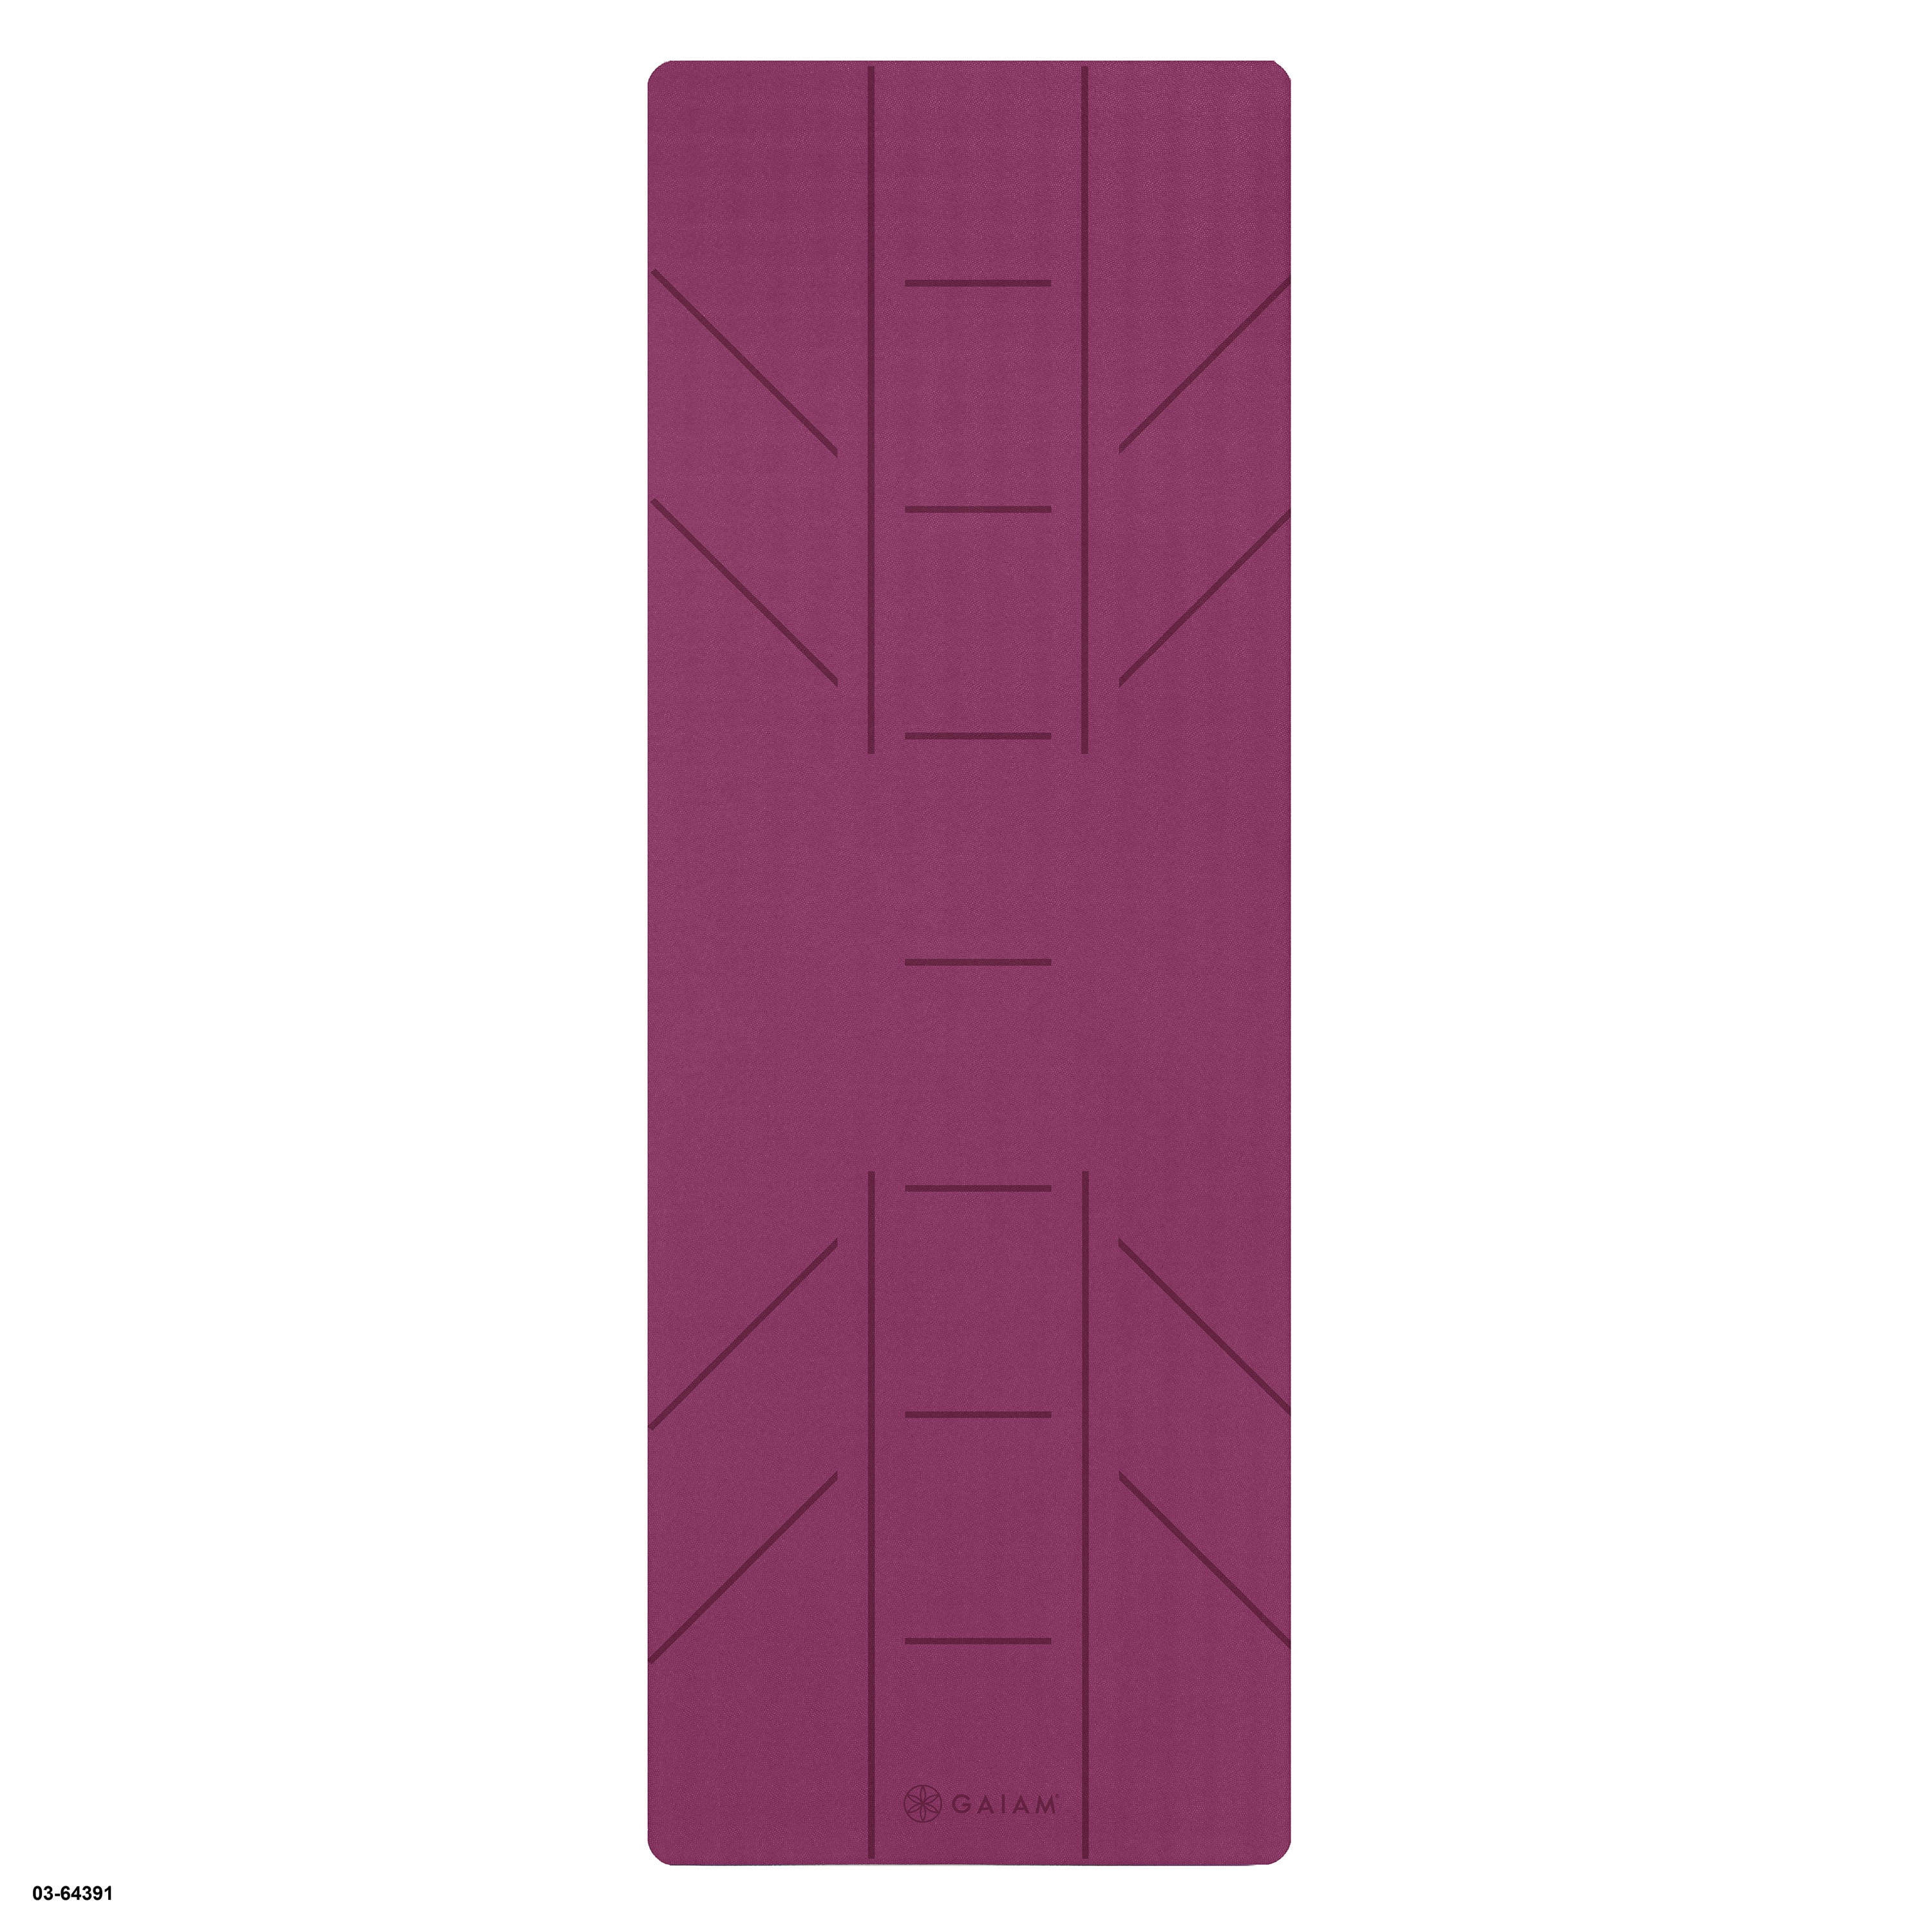 Alignment Yoga Mat (6mm) - Gaiam